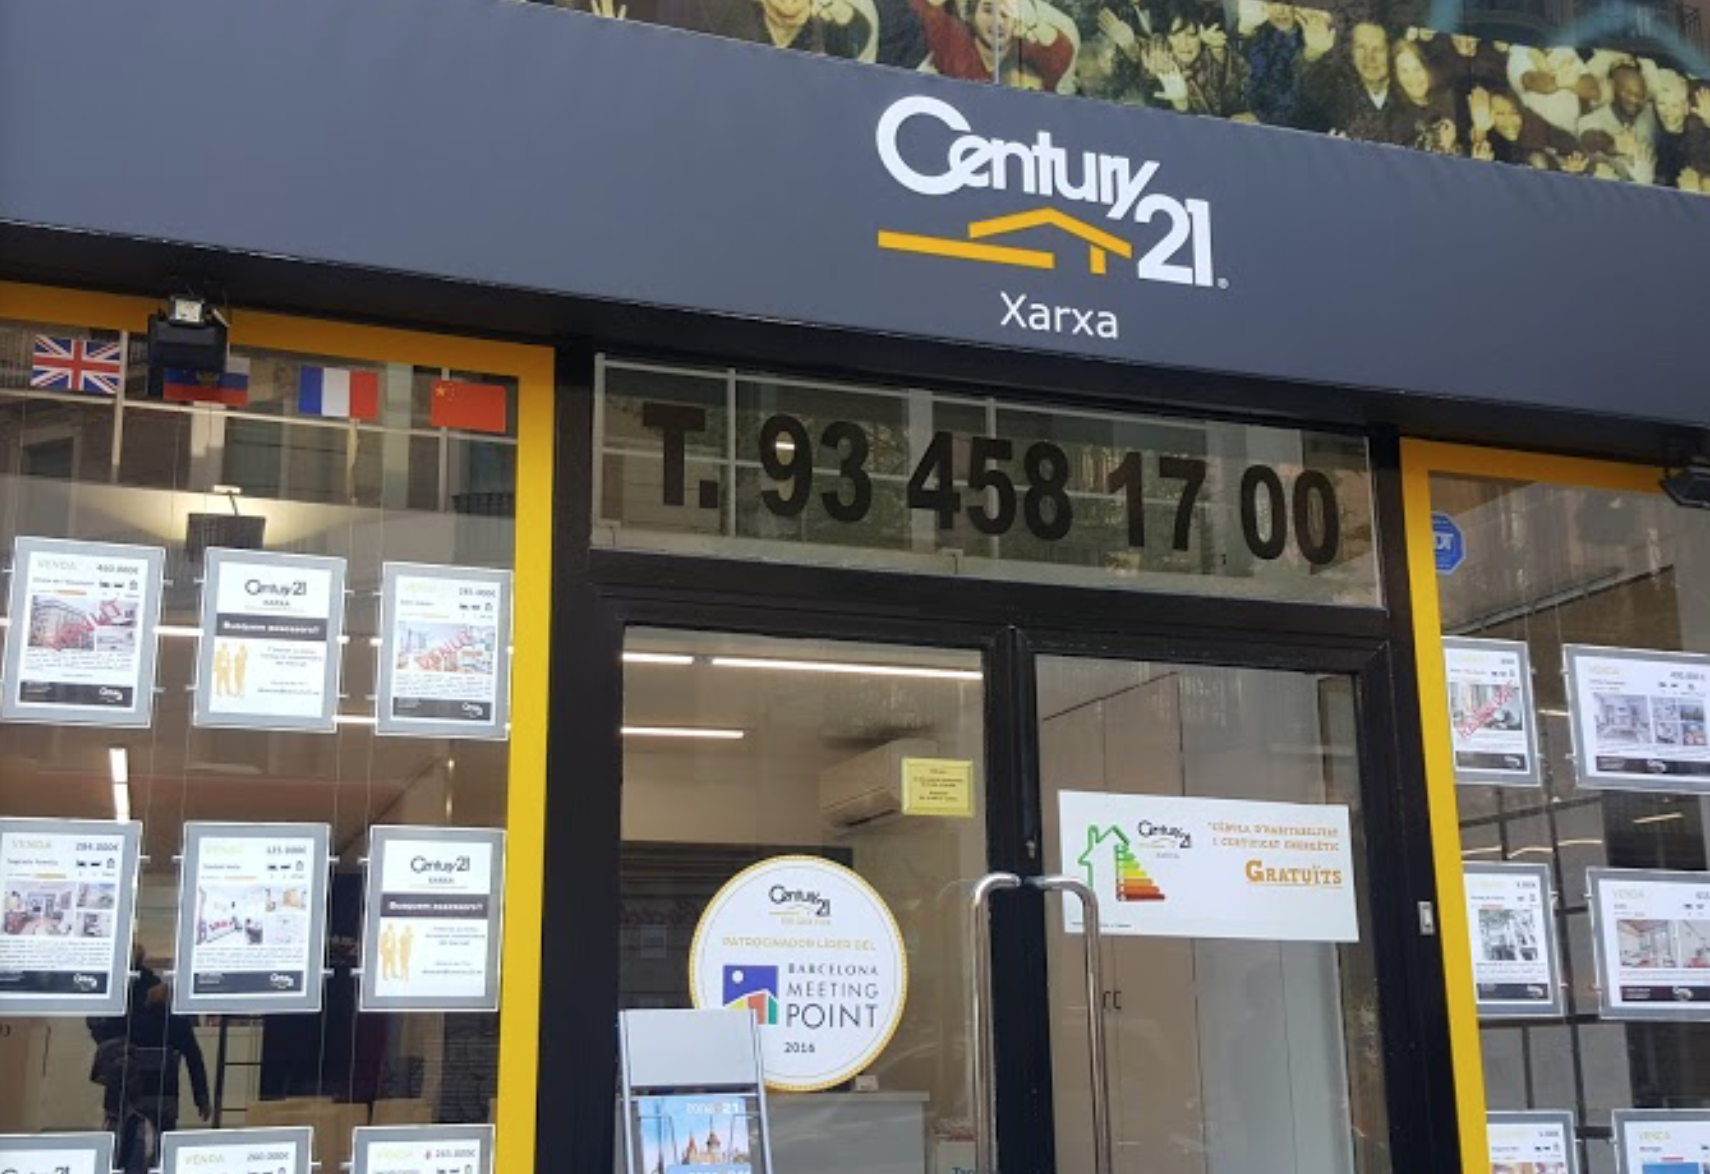 Century 21, la xarxa immobiliària de l'Eixample del carrer Còrsega